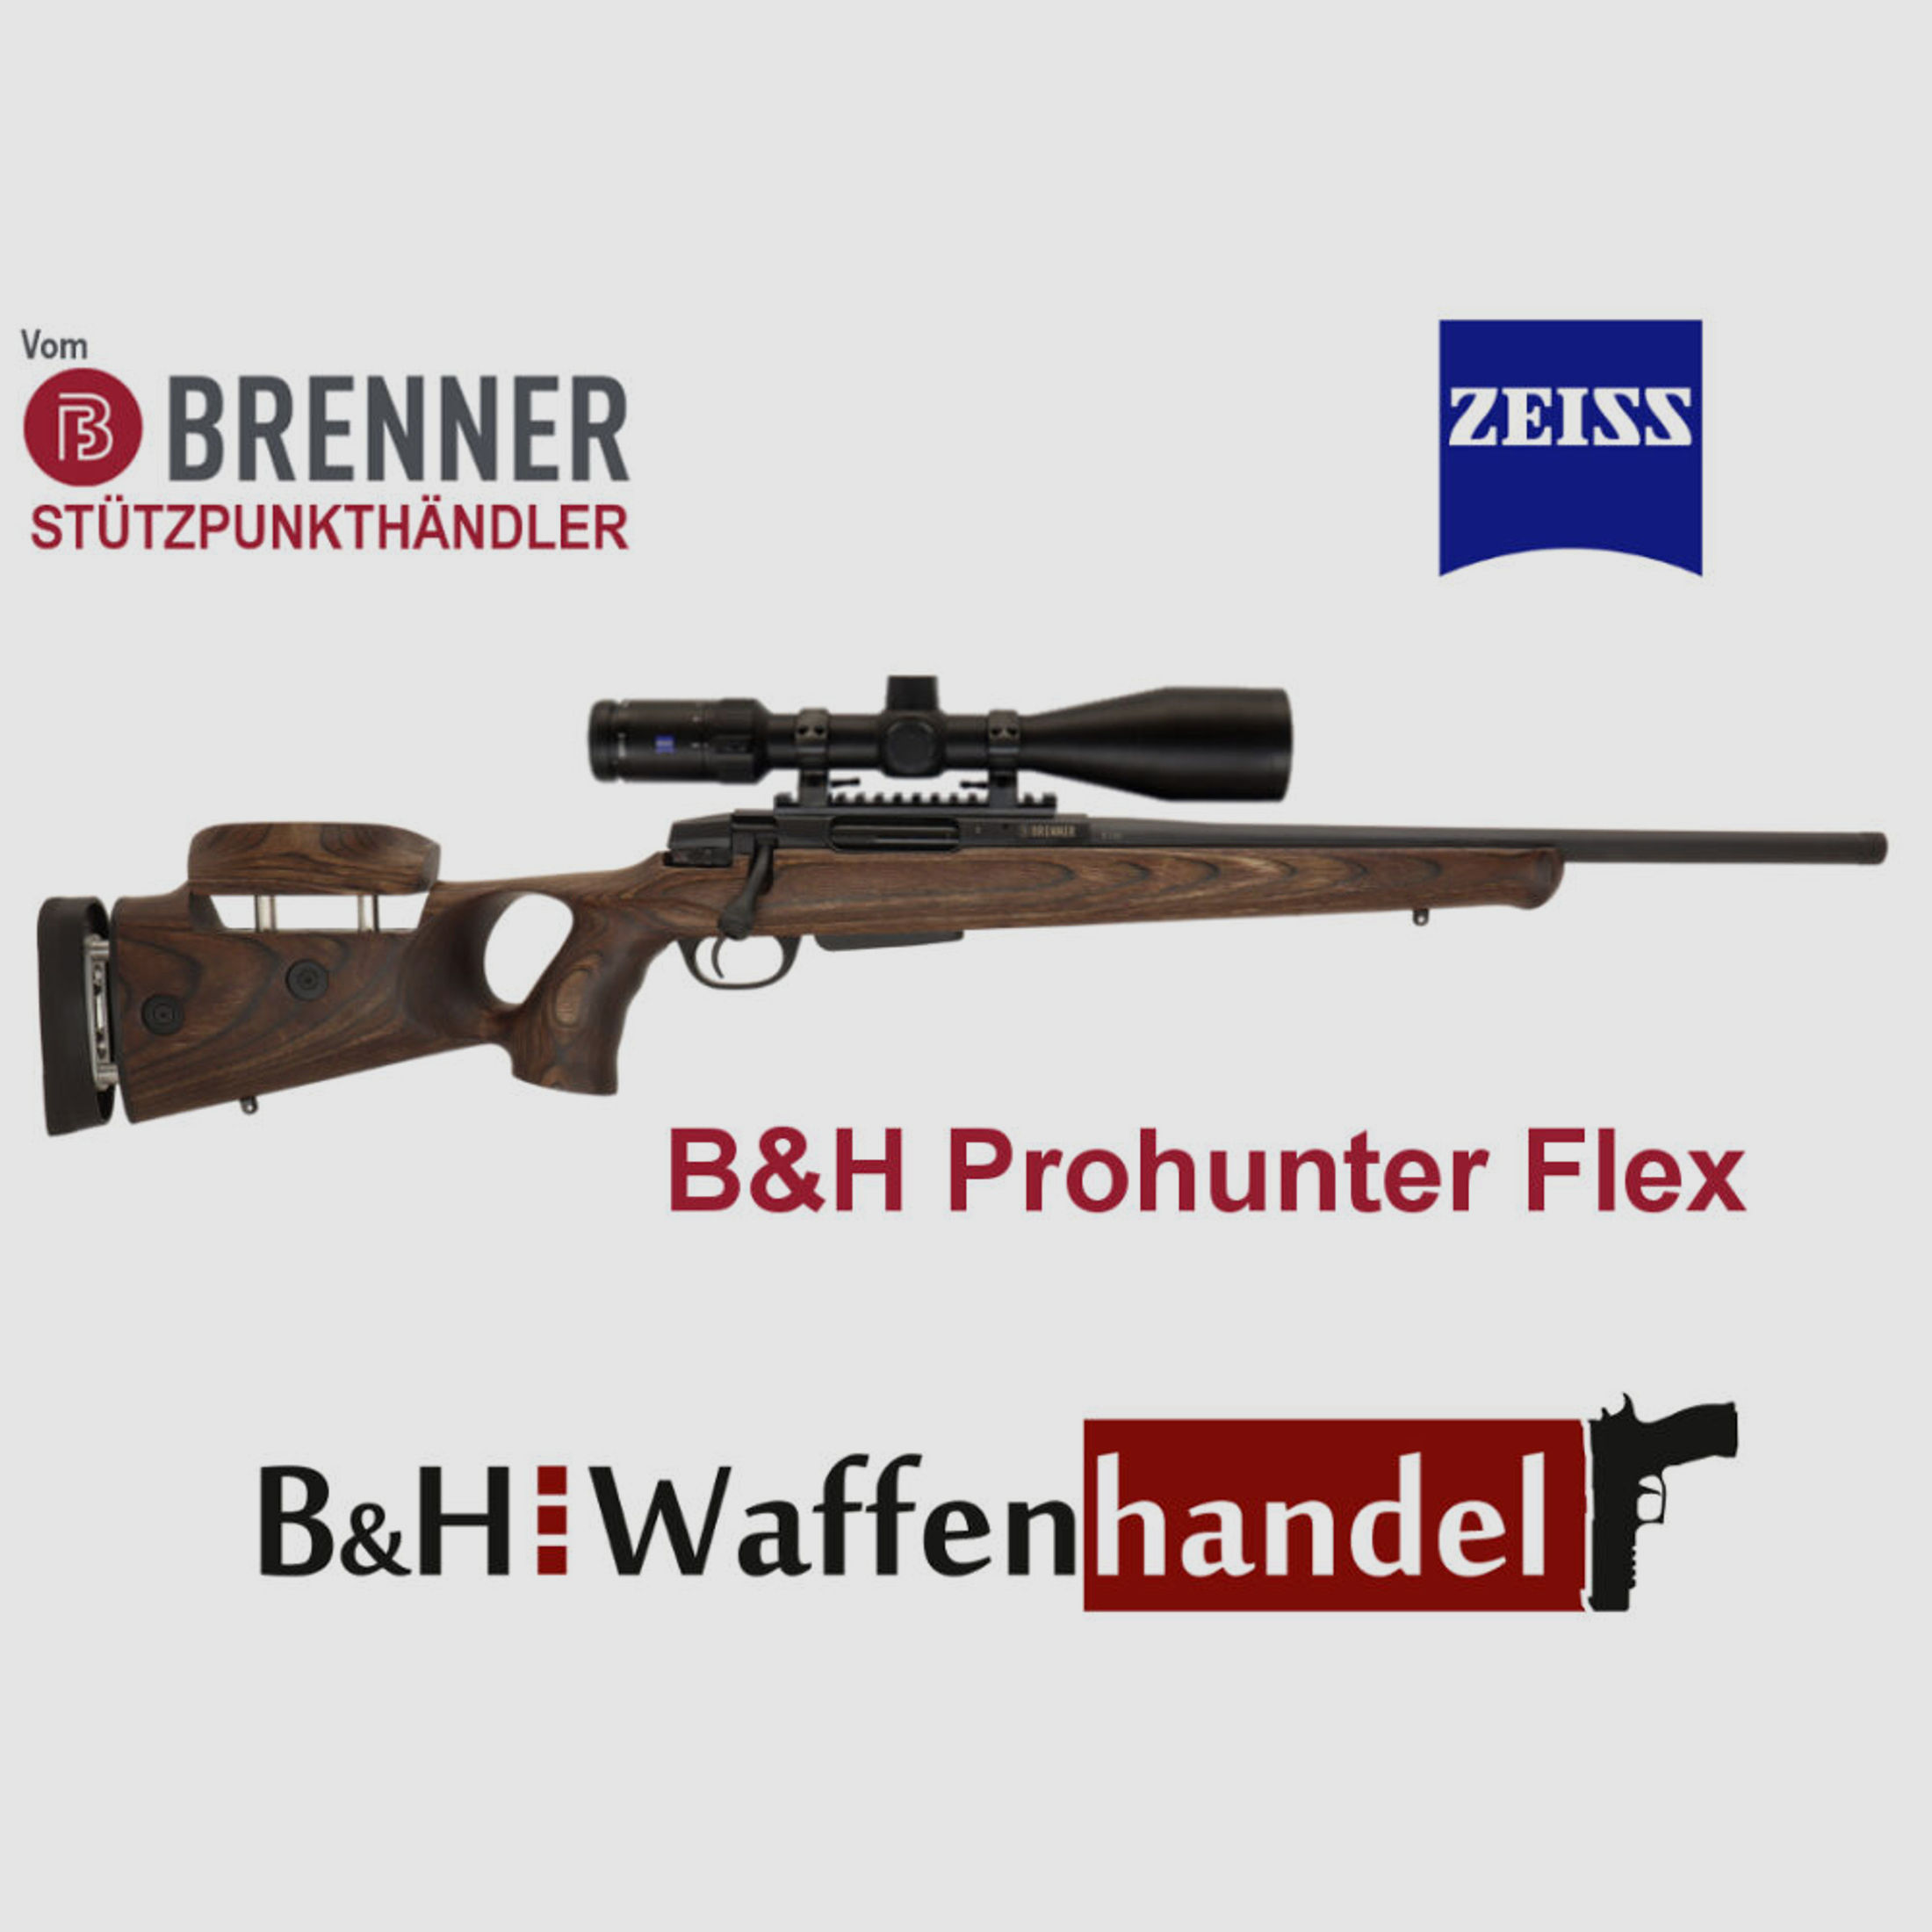 Brenner Komplettpaket:	 BR20 B&H Prohunter Flex Lochschaft mit Zeiss V4 fertig montiert